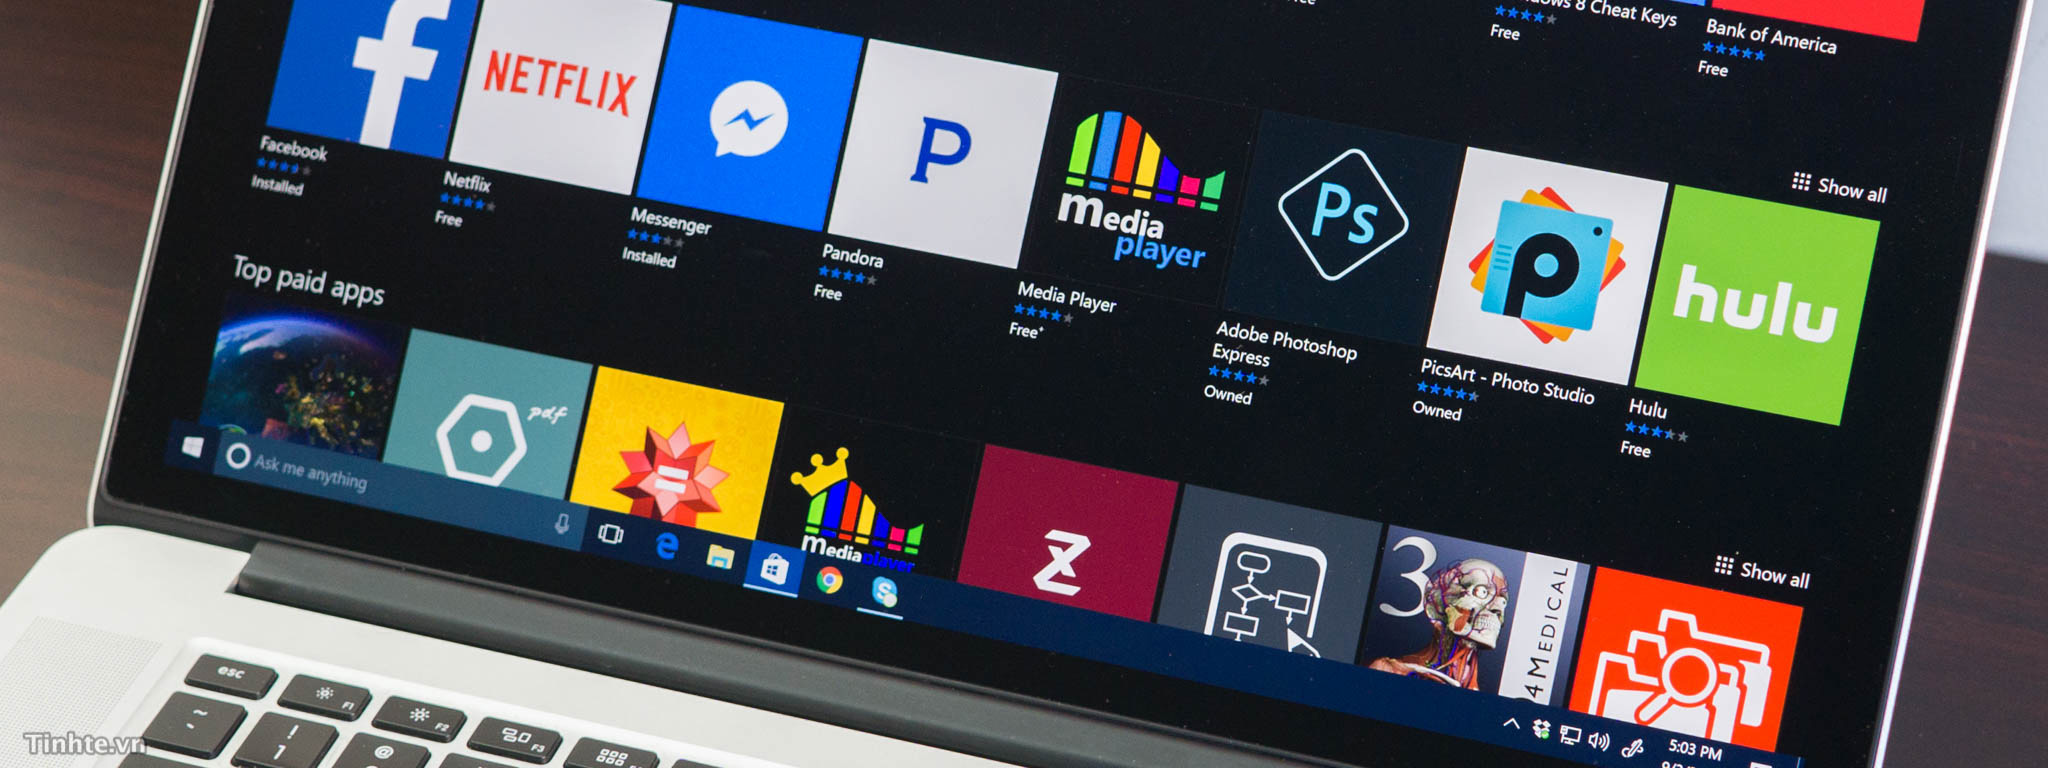 Ngày 11/4 sẽ có cập nhật Windows 10 Creators?